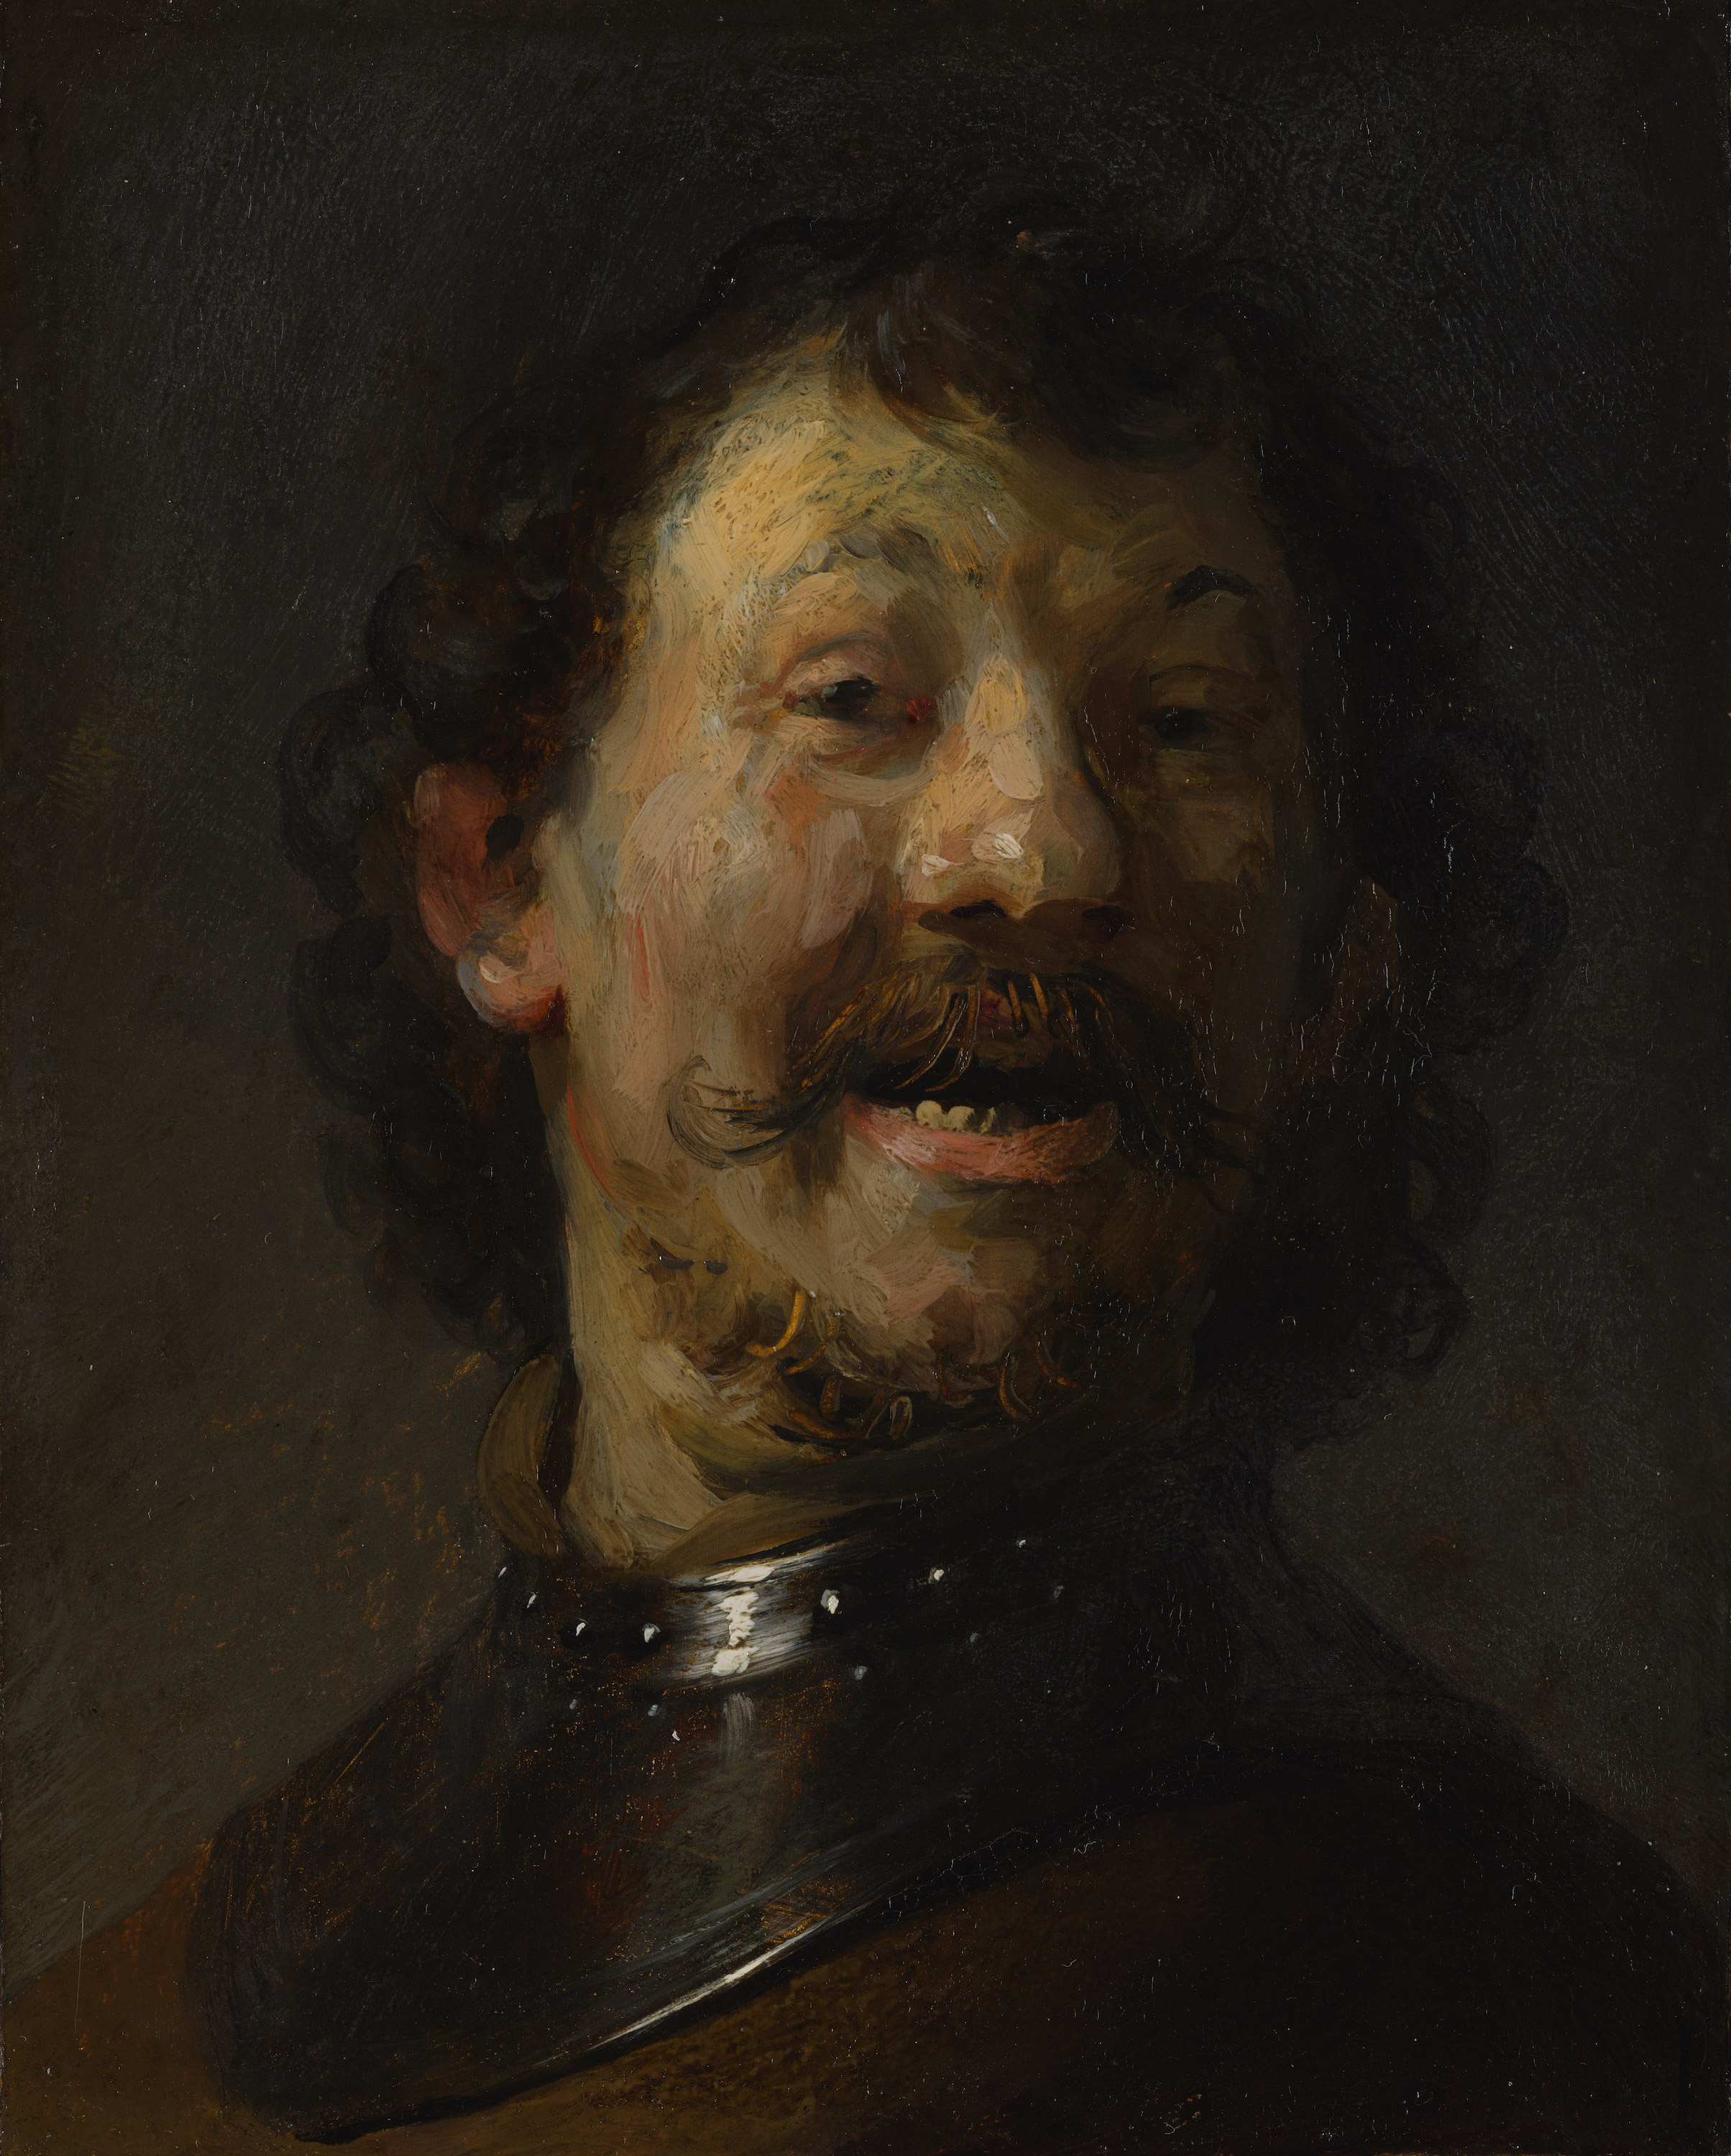 الرَّجلُ الضّاحك by Rembrandt van Rijn - حَوالي ١٦٢٩ - ١٦٣٠ - ١٥.٣ × ١٢.٢ 